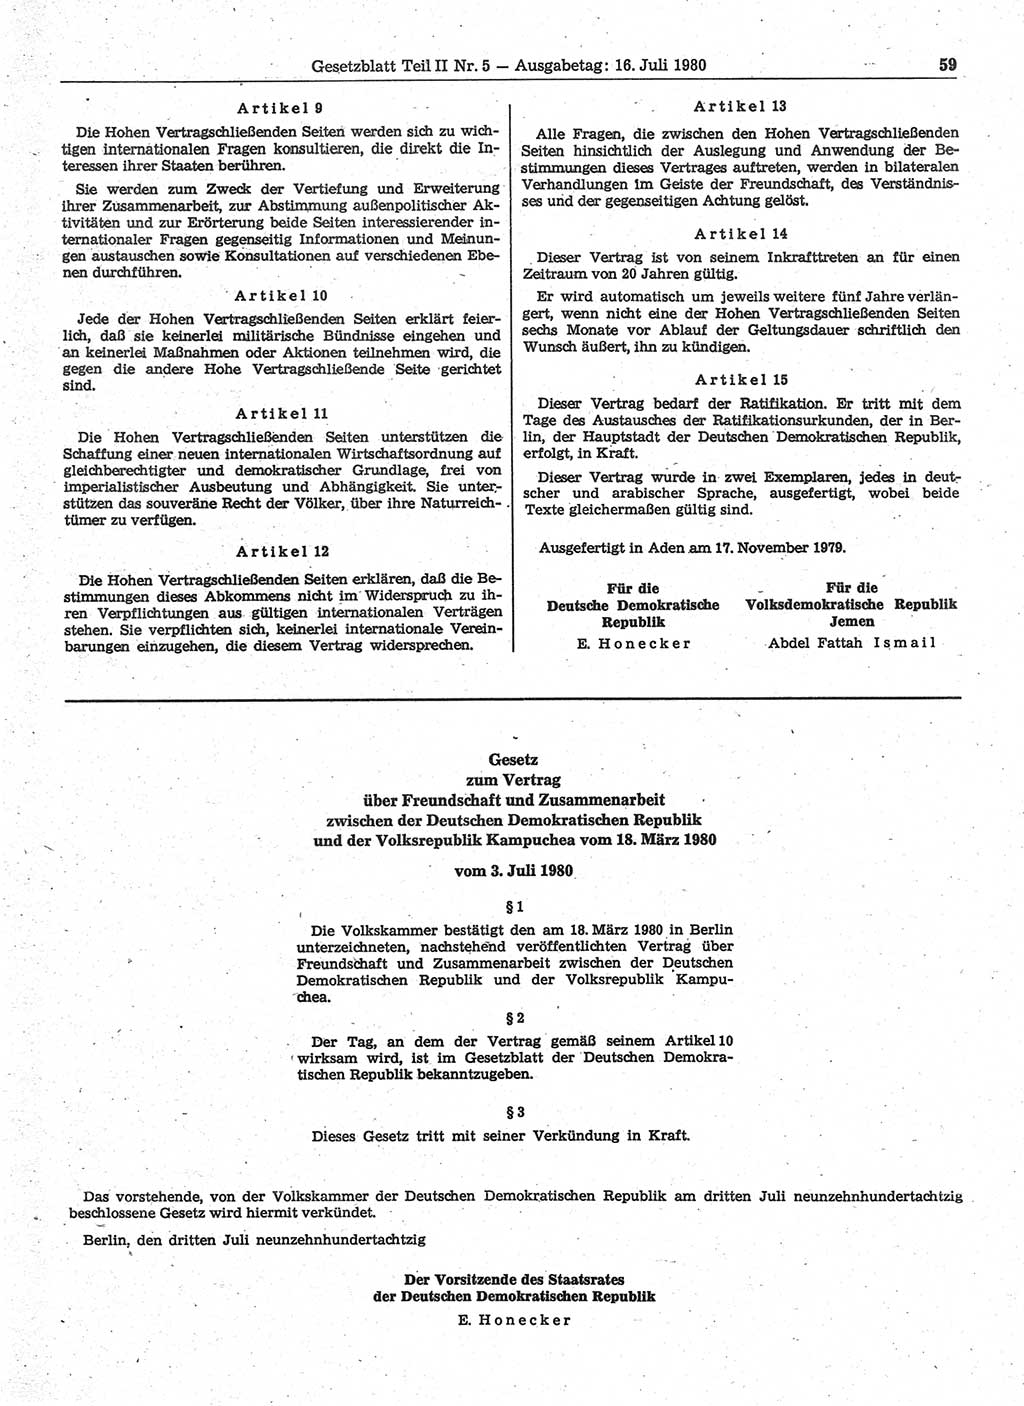 Gesetzblatt (GBl.) der Deutschen Demokratischen Republik (DDR) Teil ⅠⅠ 1980, Seite 59 (GBl. DDR ⅠⅠ 1980, S. 59)